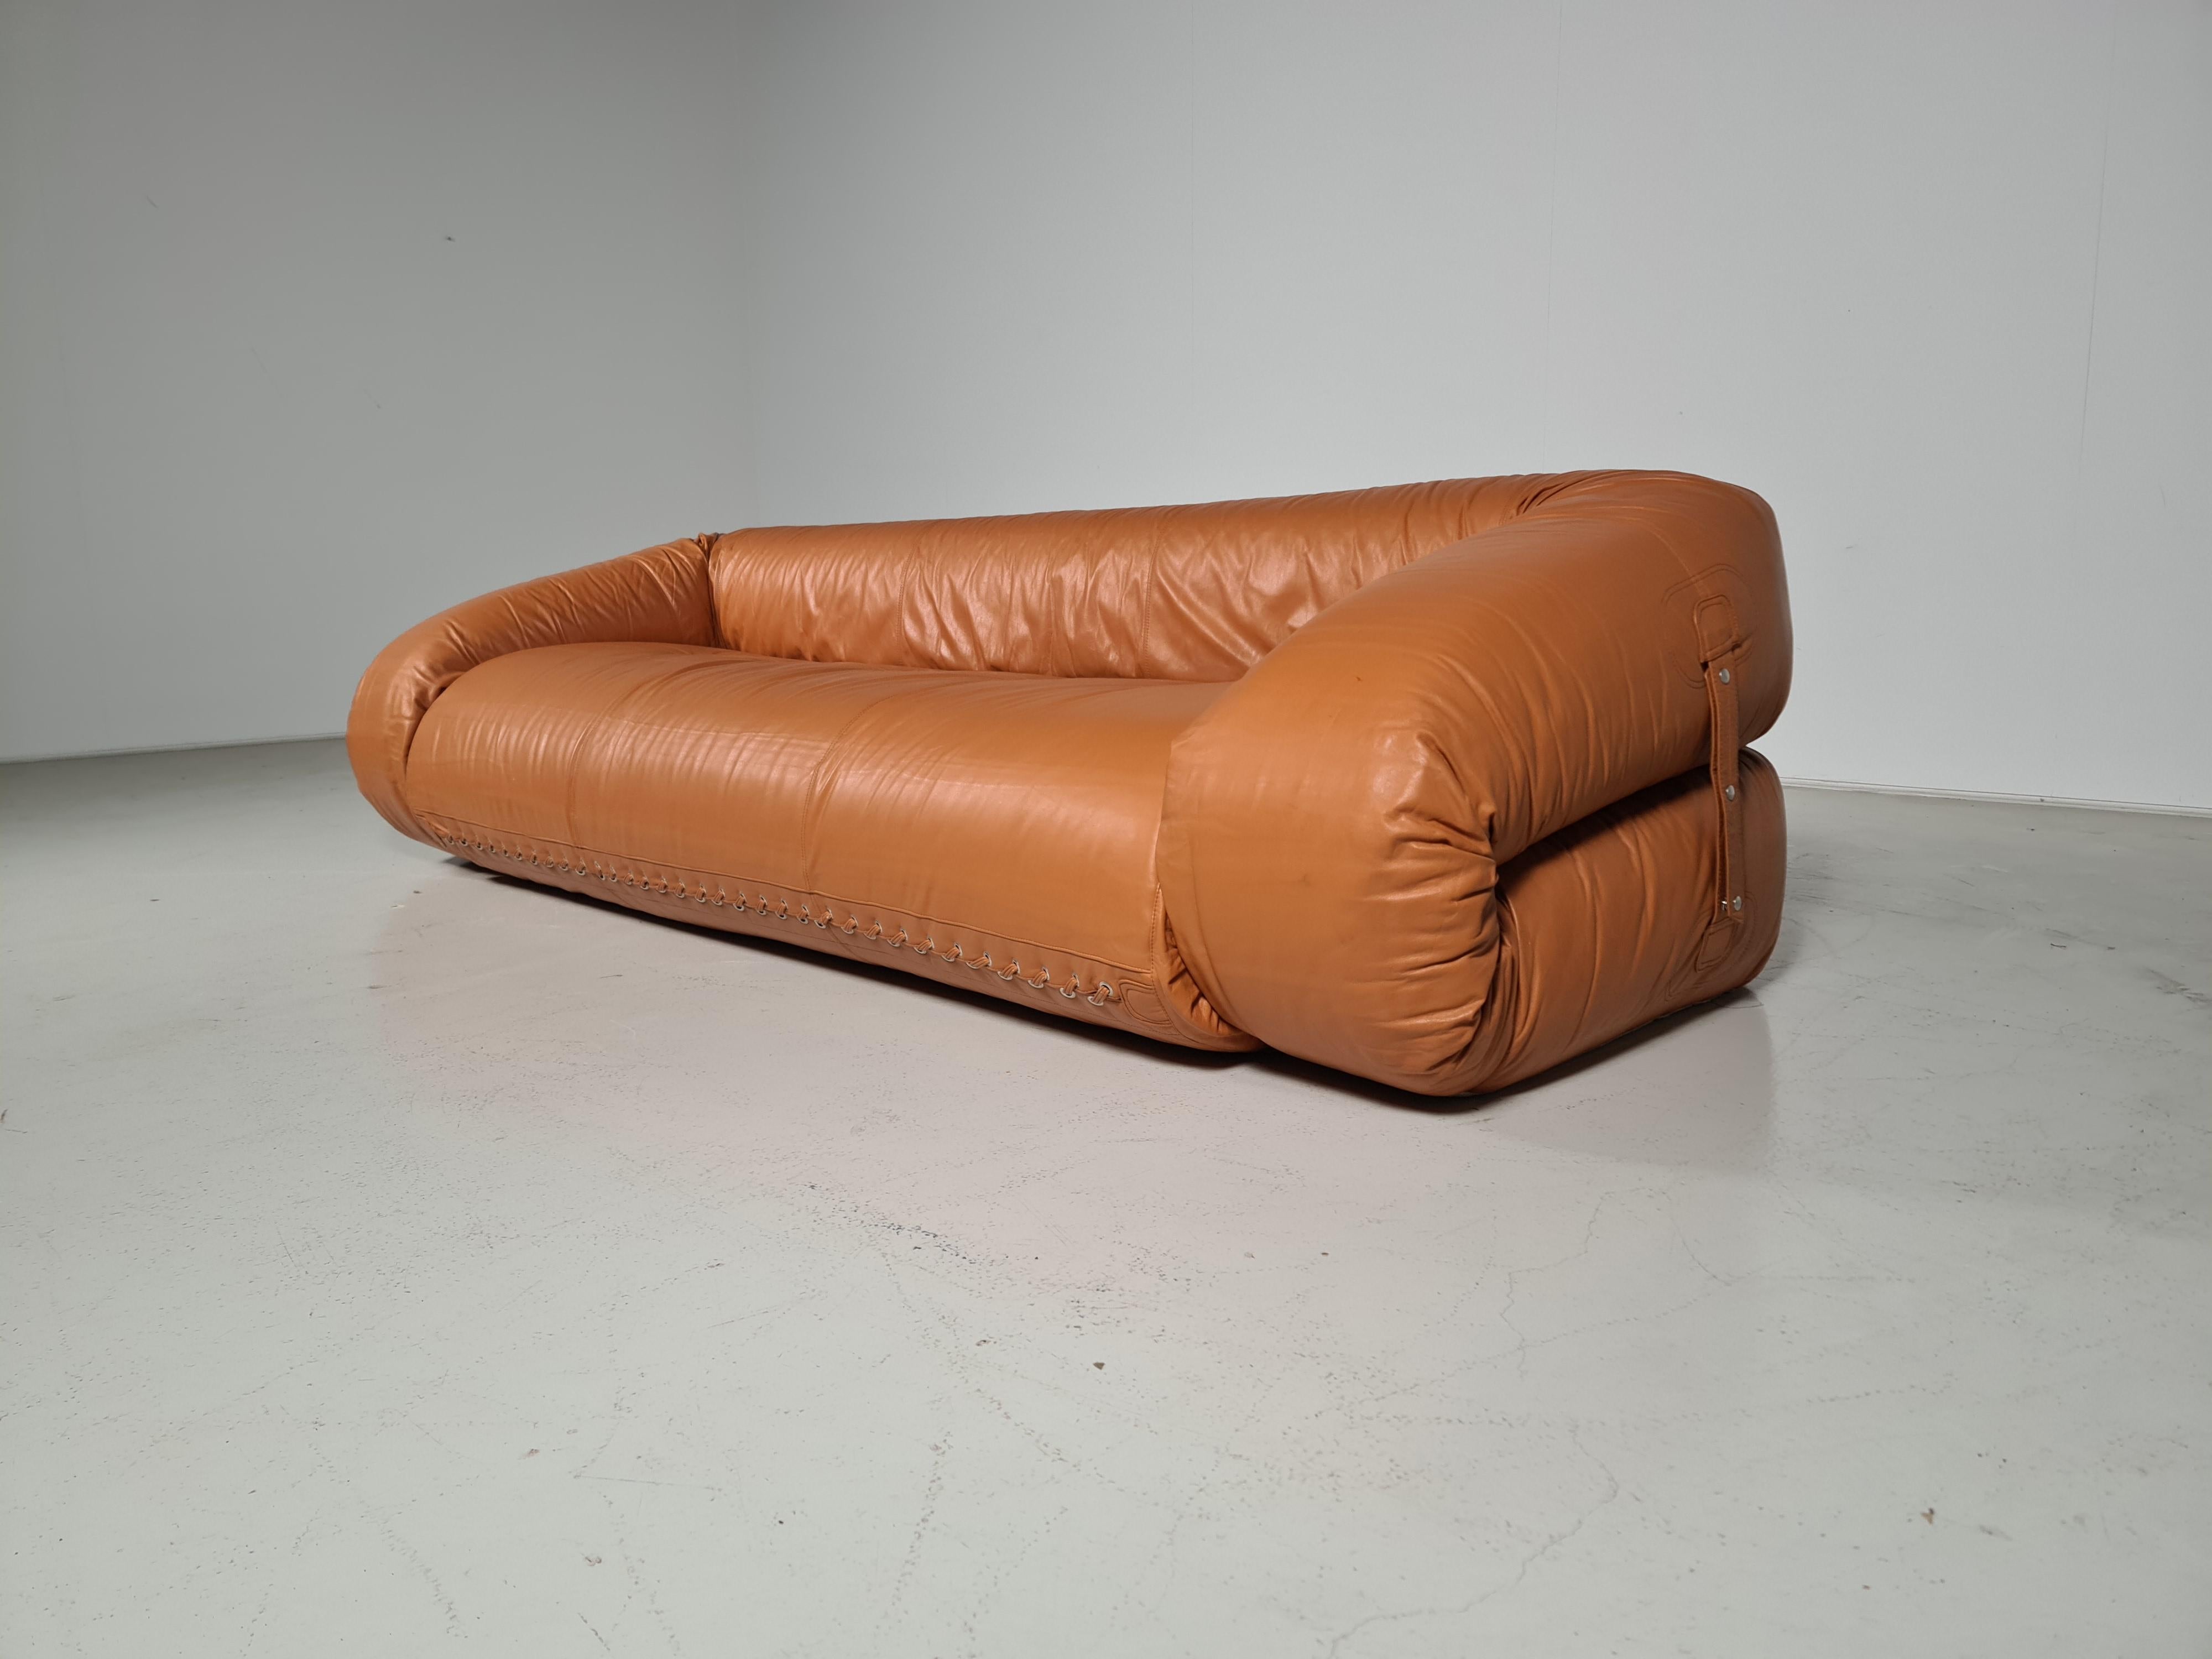 Alessandro Becchi for Giovannetti Collezioni, 'Anfibio' sofa, leather, Italy, 1970s.

Rare 